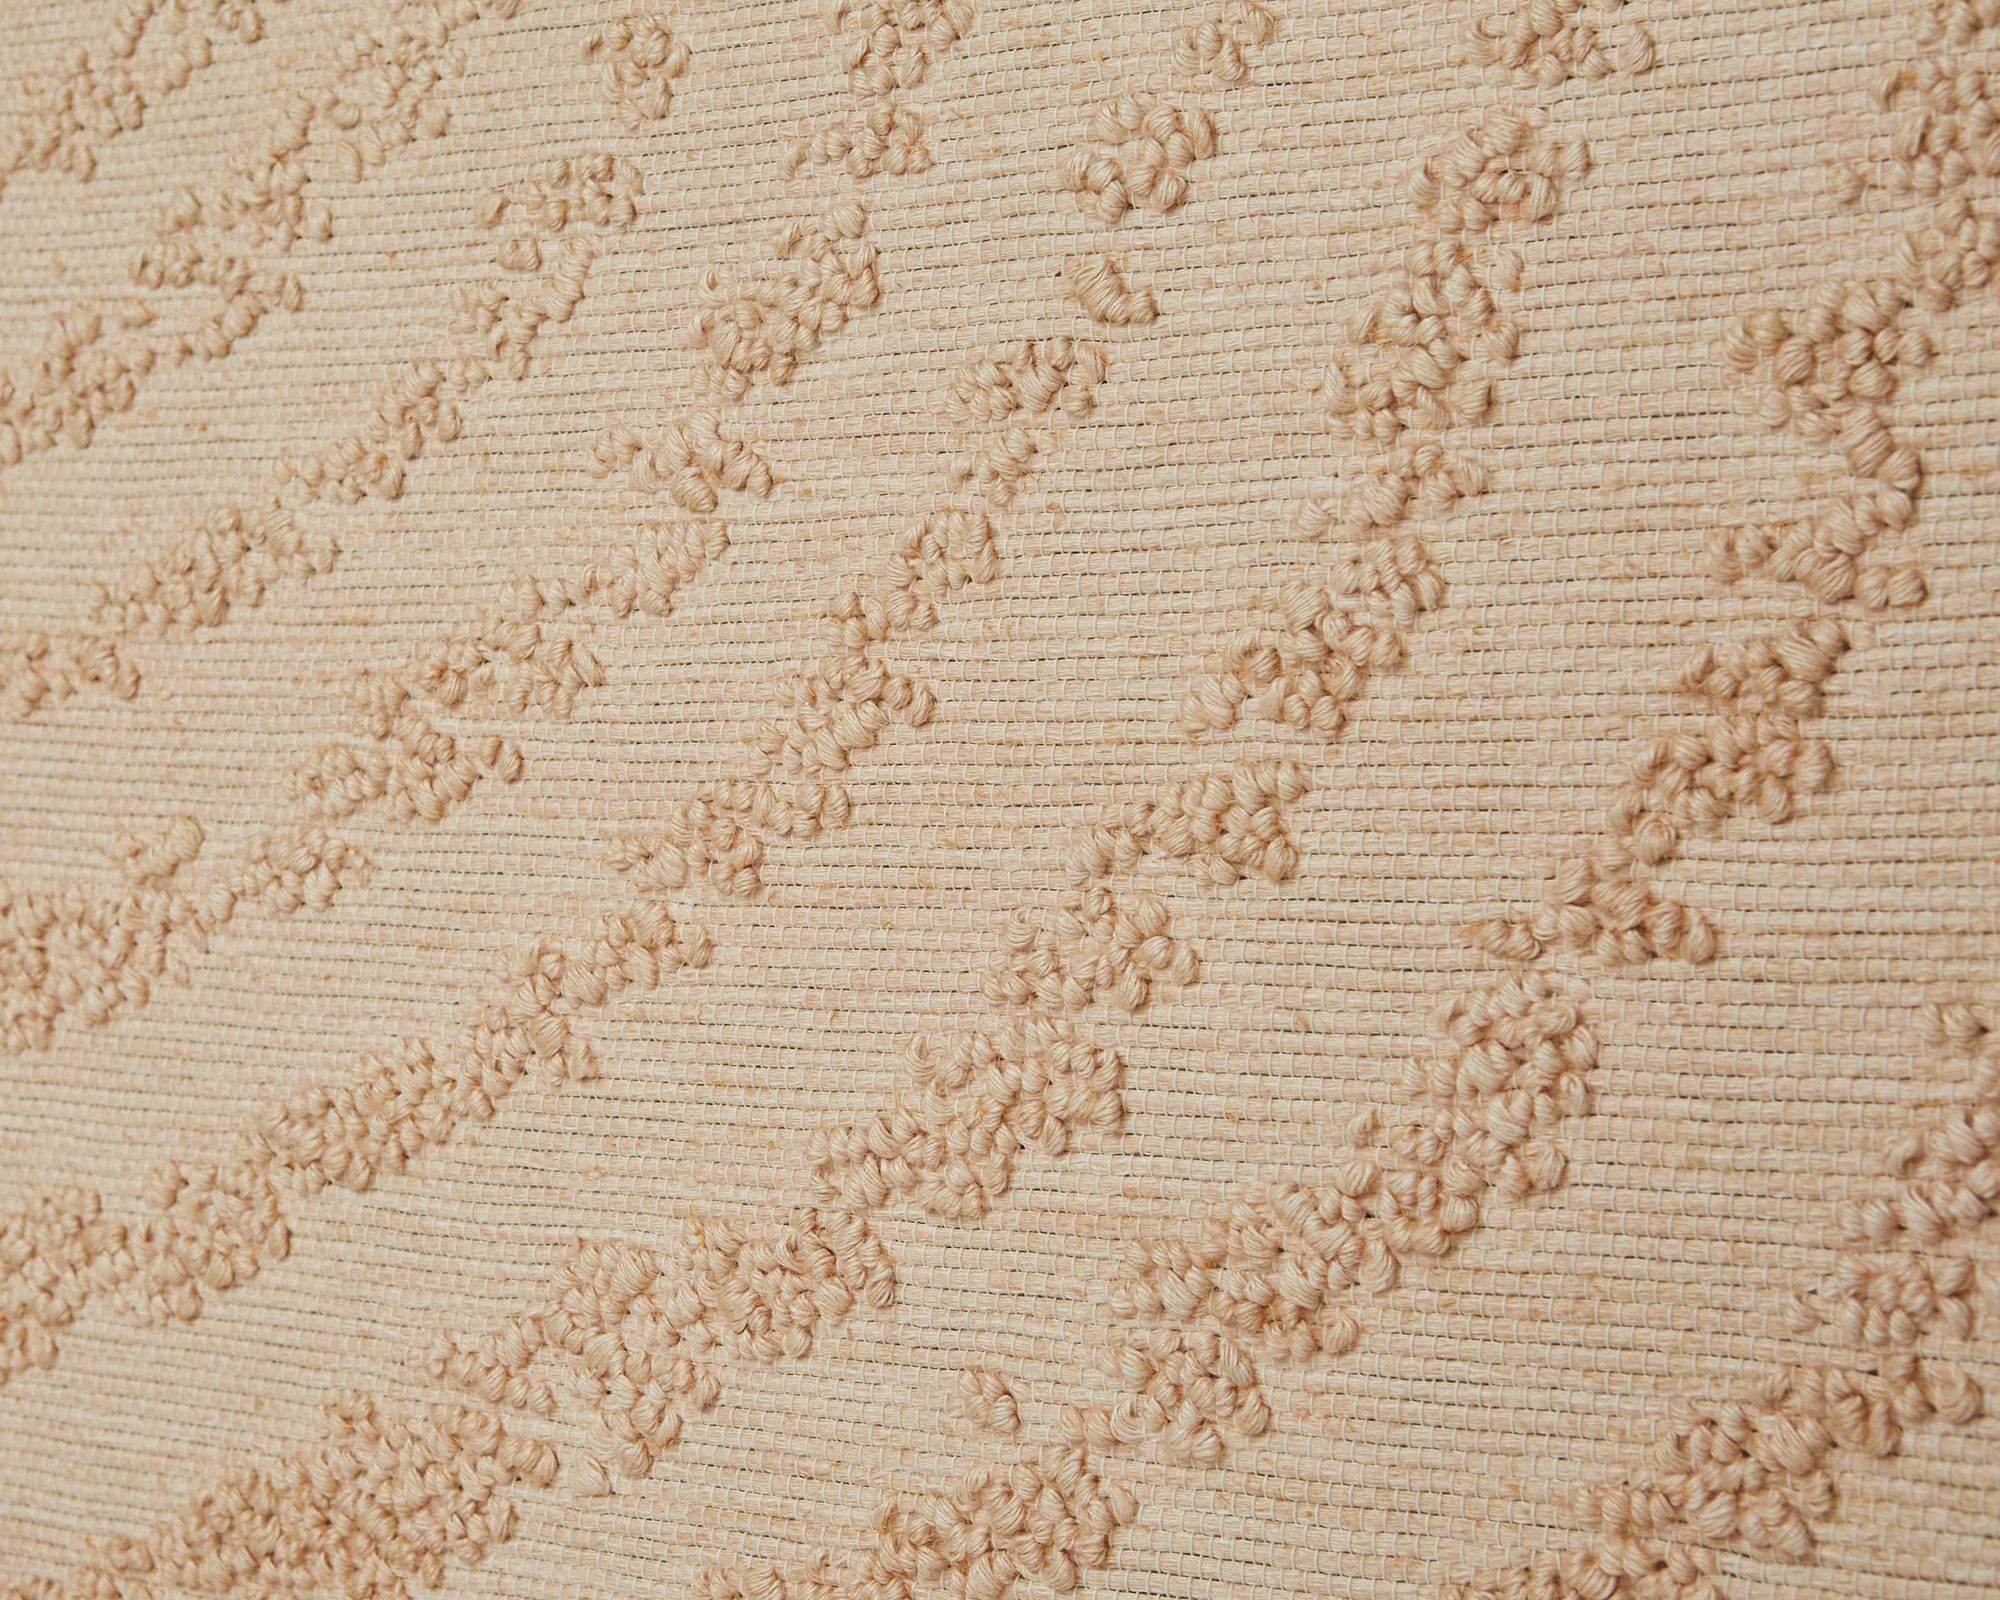 Scandinavian Modern Tapestry “Fields” Designed by Elisabet Hasselberg Olsson, Sweden, 1979